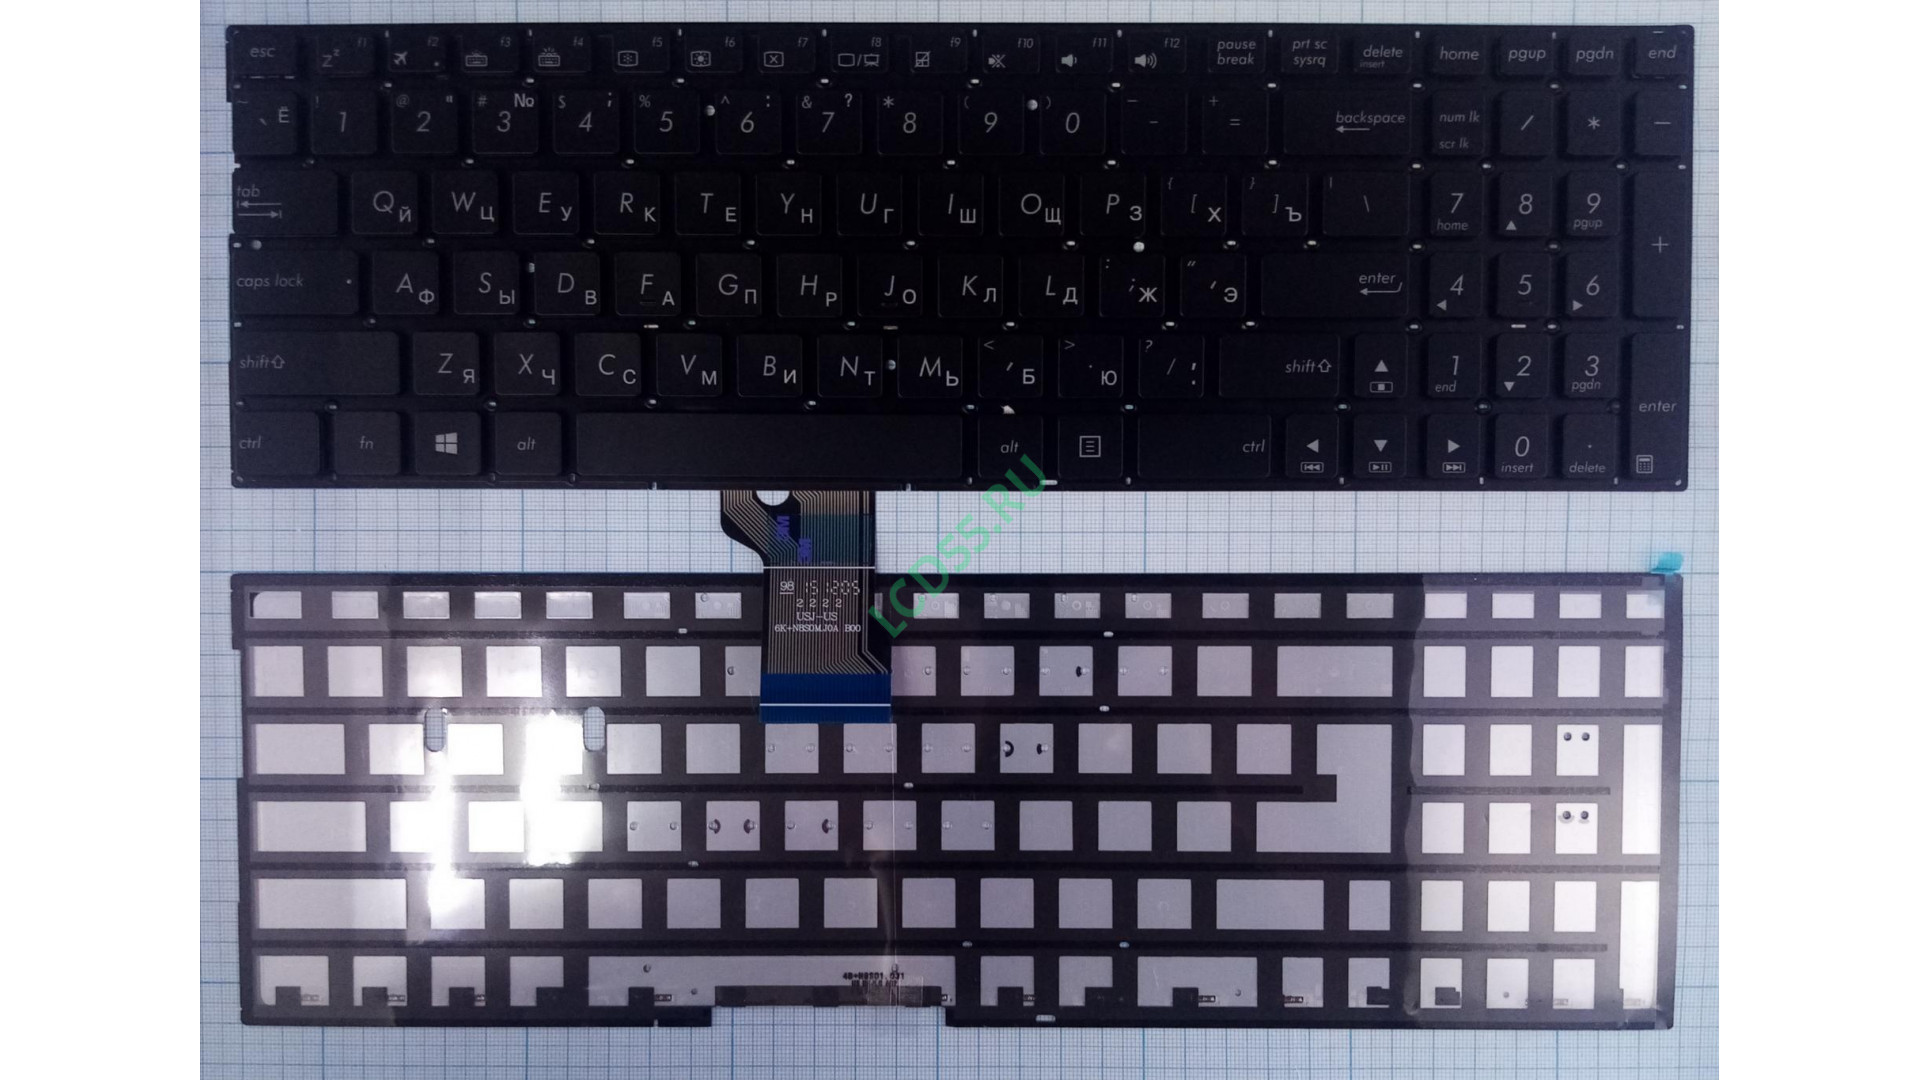 Клавиатура Asus N541L Q501L Q551L с подсветкой